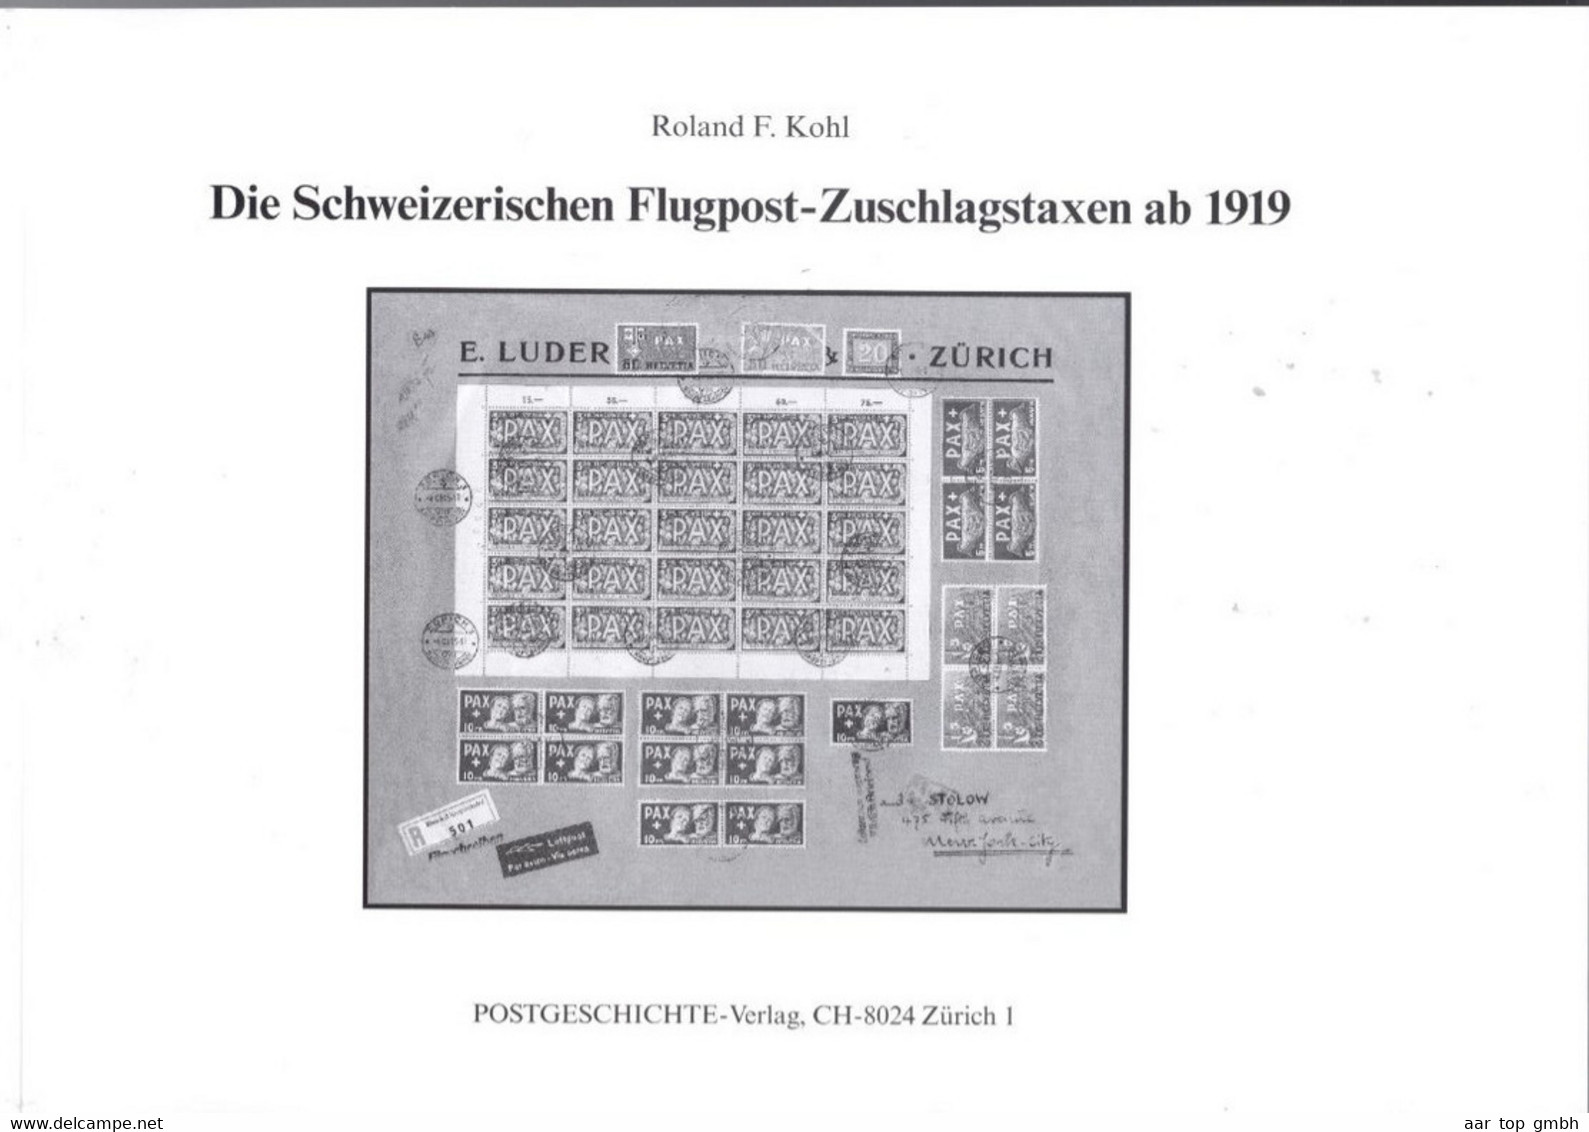 Schweiz, Die Schweizerischen Flugpost-Zuschlagstaxen Ab 1919; Roland F.Kohl 1997, 116 Seiten ~470gr. - Handbooks